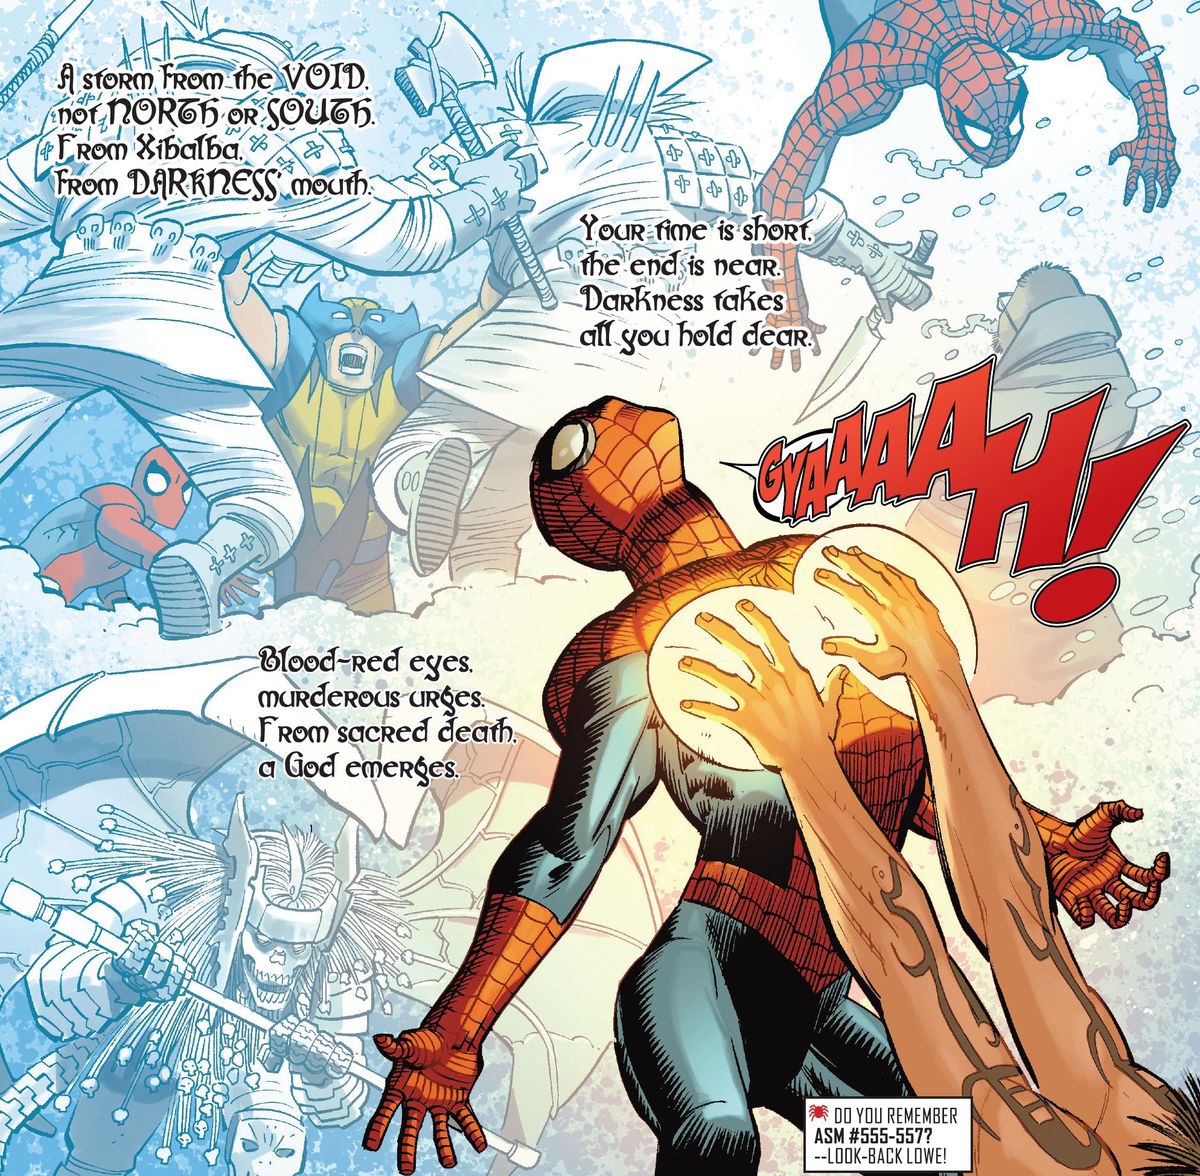 تكثر المقاطع المقفرة فوق صور مغامرات الرجل العنكبوت السابقة حيث يلامس رجل ذو وشم غريب صدره بأيدٍ ملتهبة بالطاقة في Amazing Spider-Man # 21 (2023).